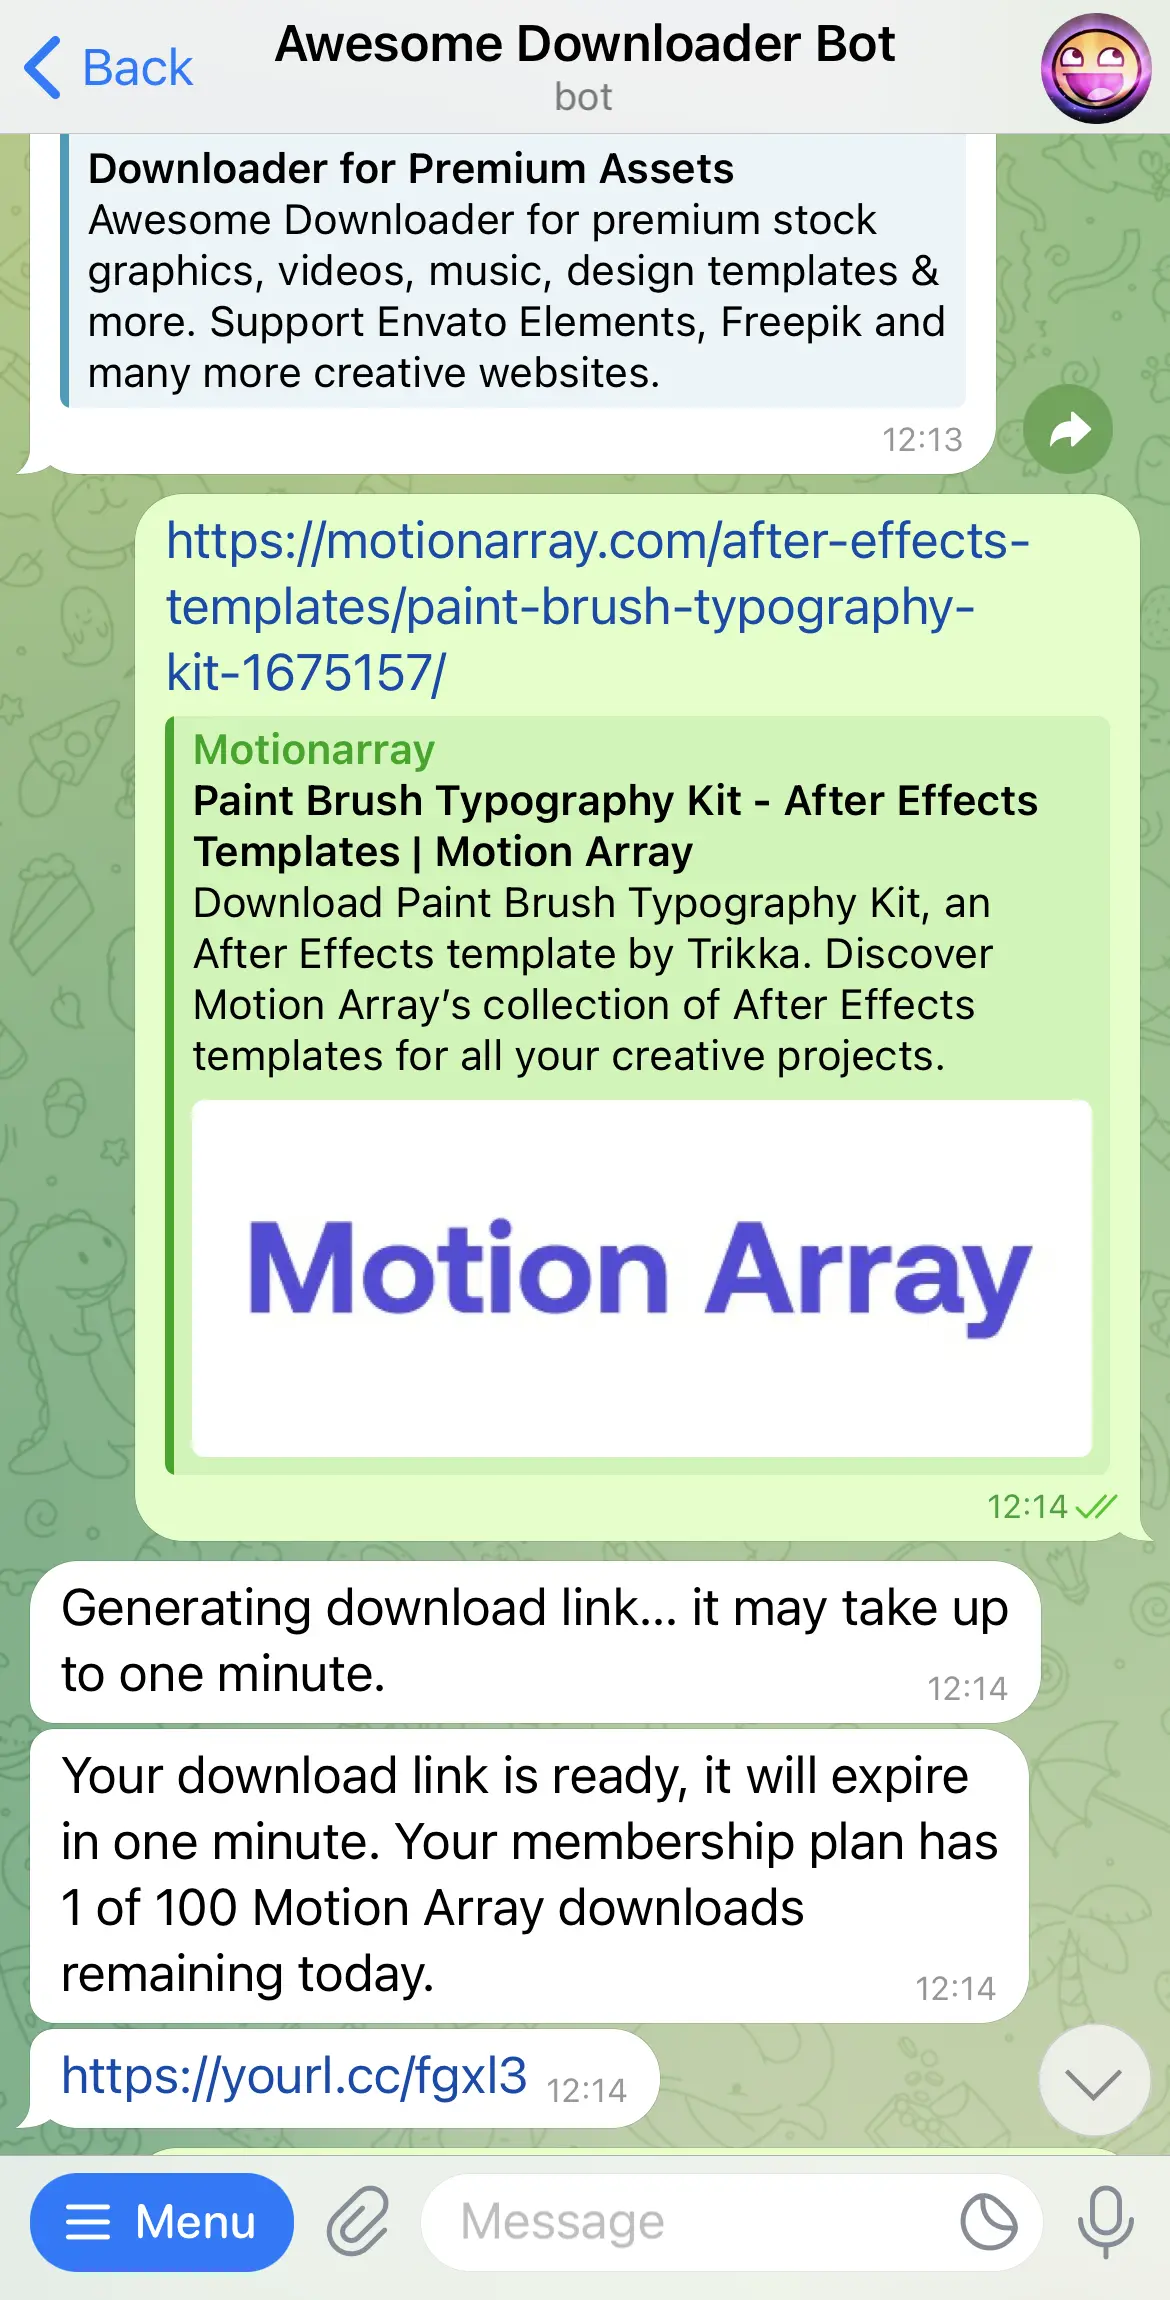 Motion Array Downloader Bot